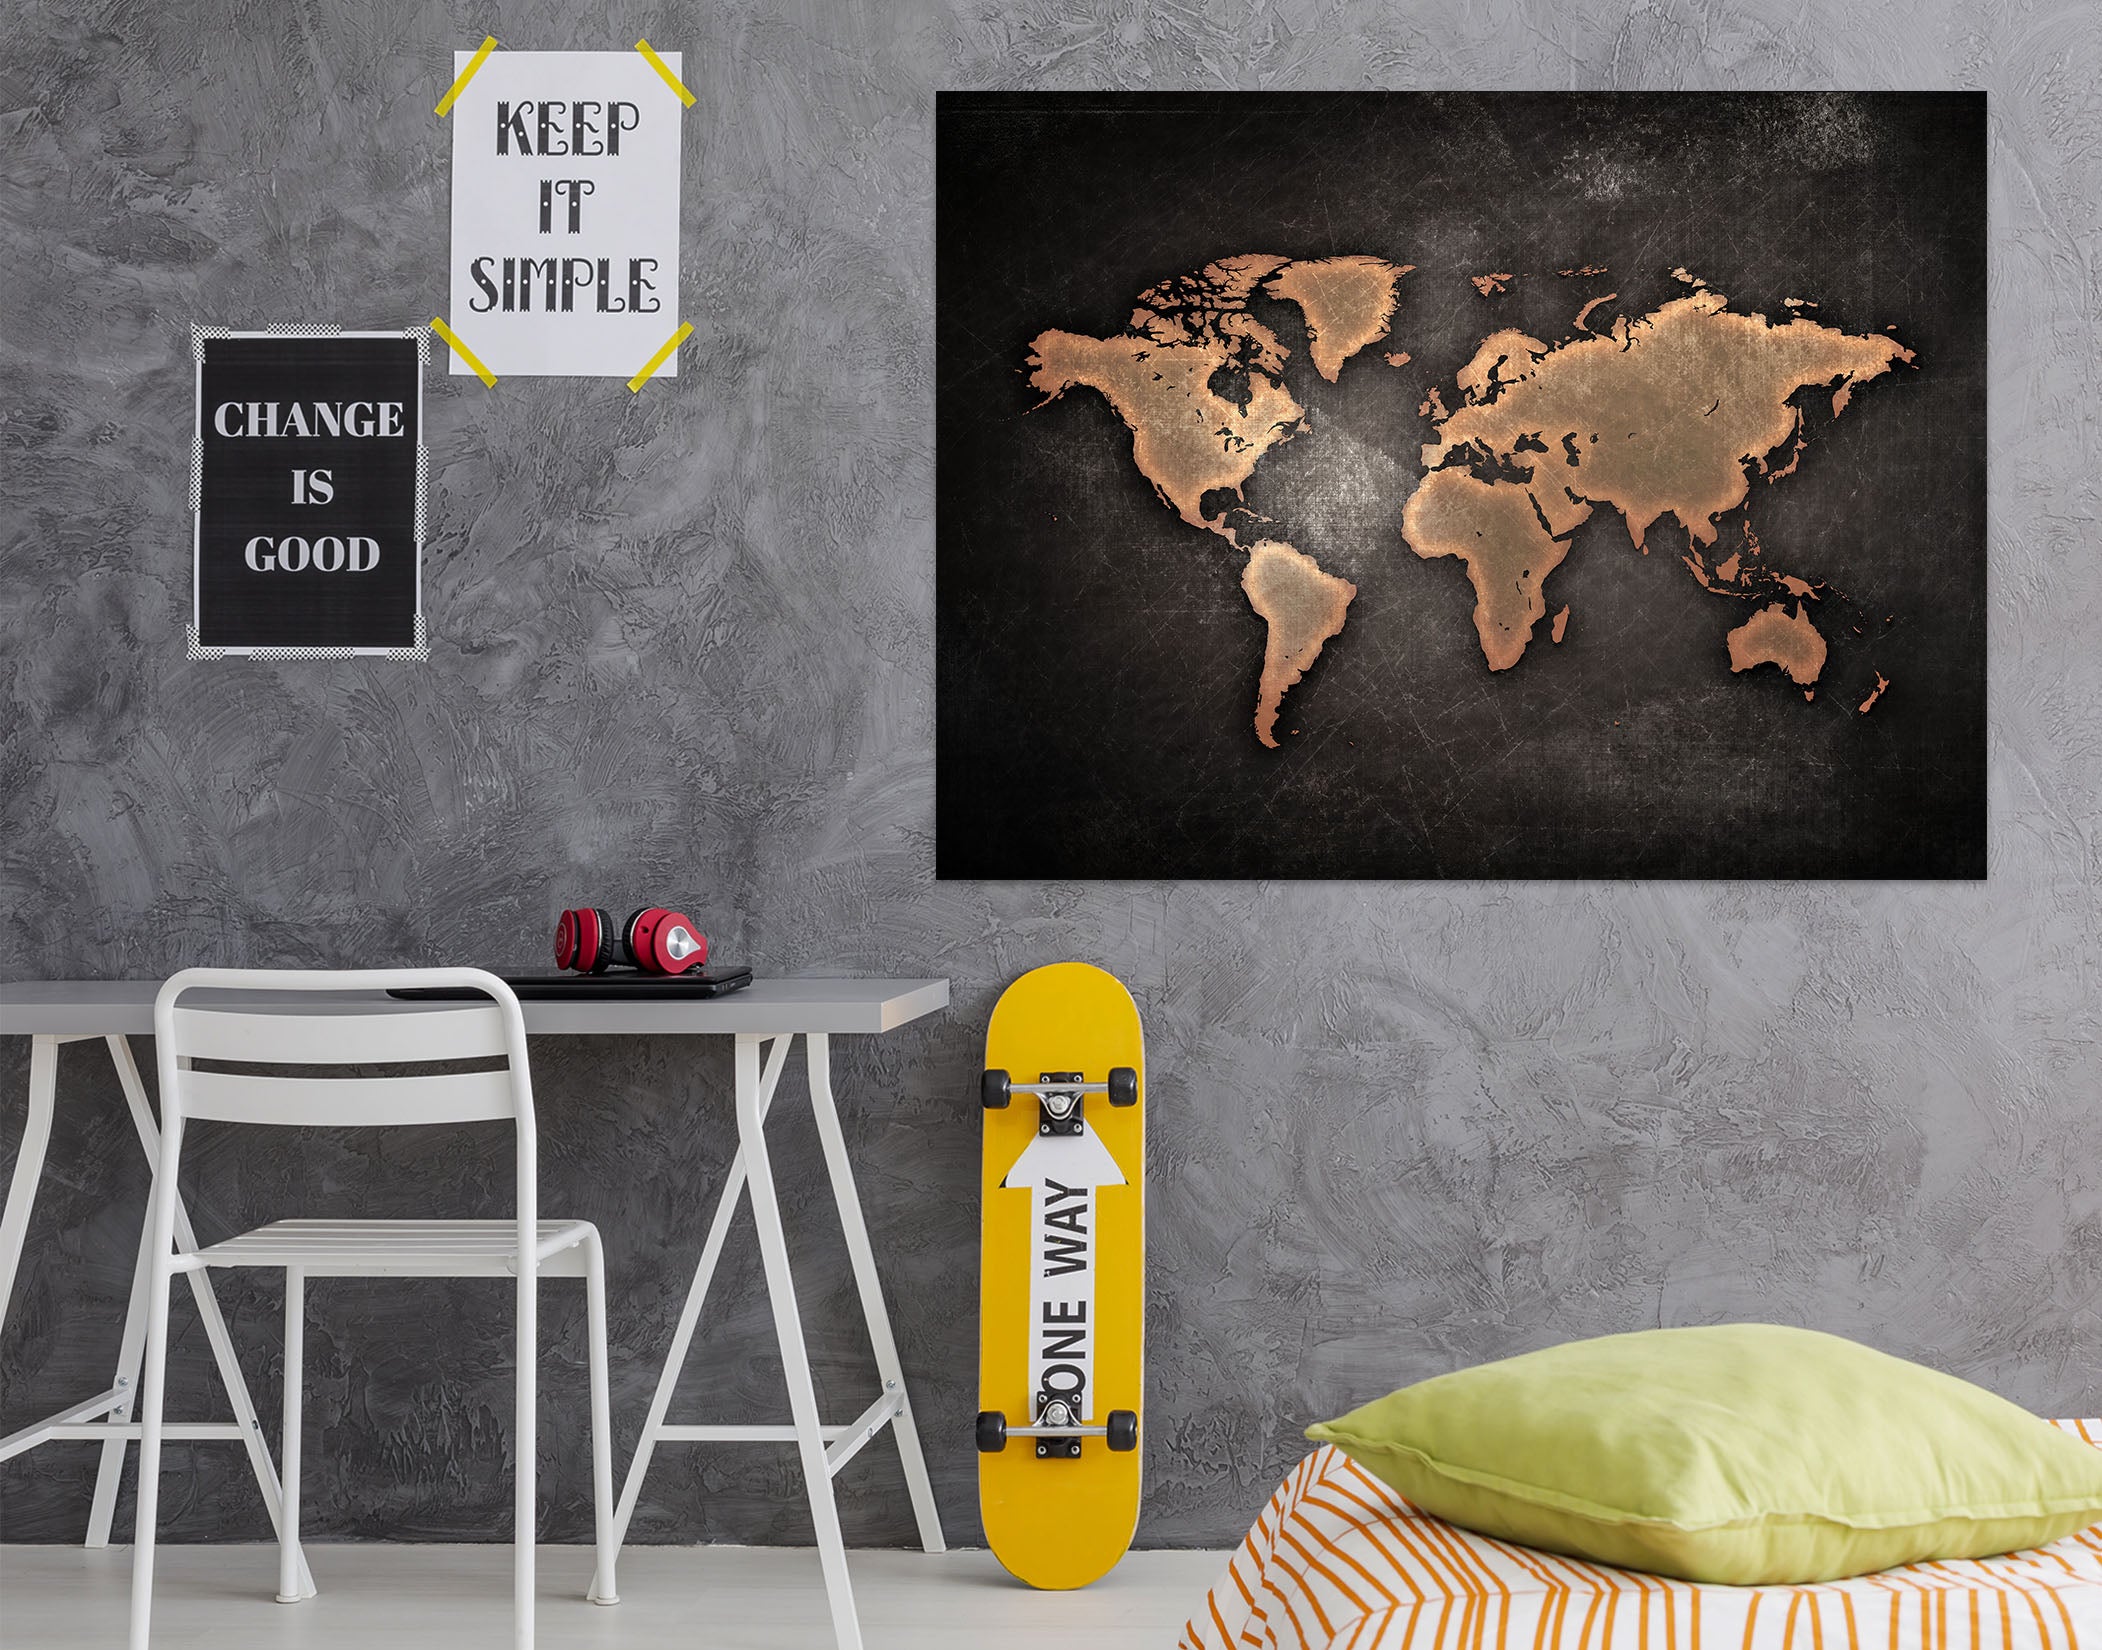 3D Gold Pattern 105 World Map Wall Sticker